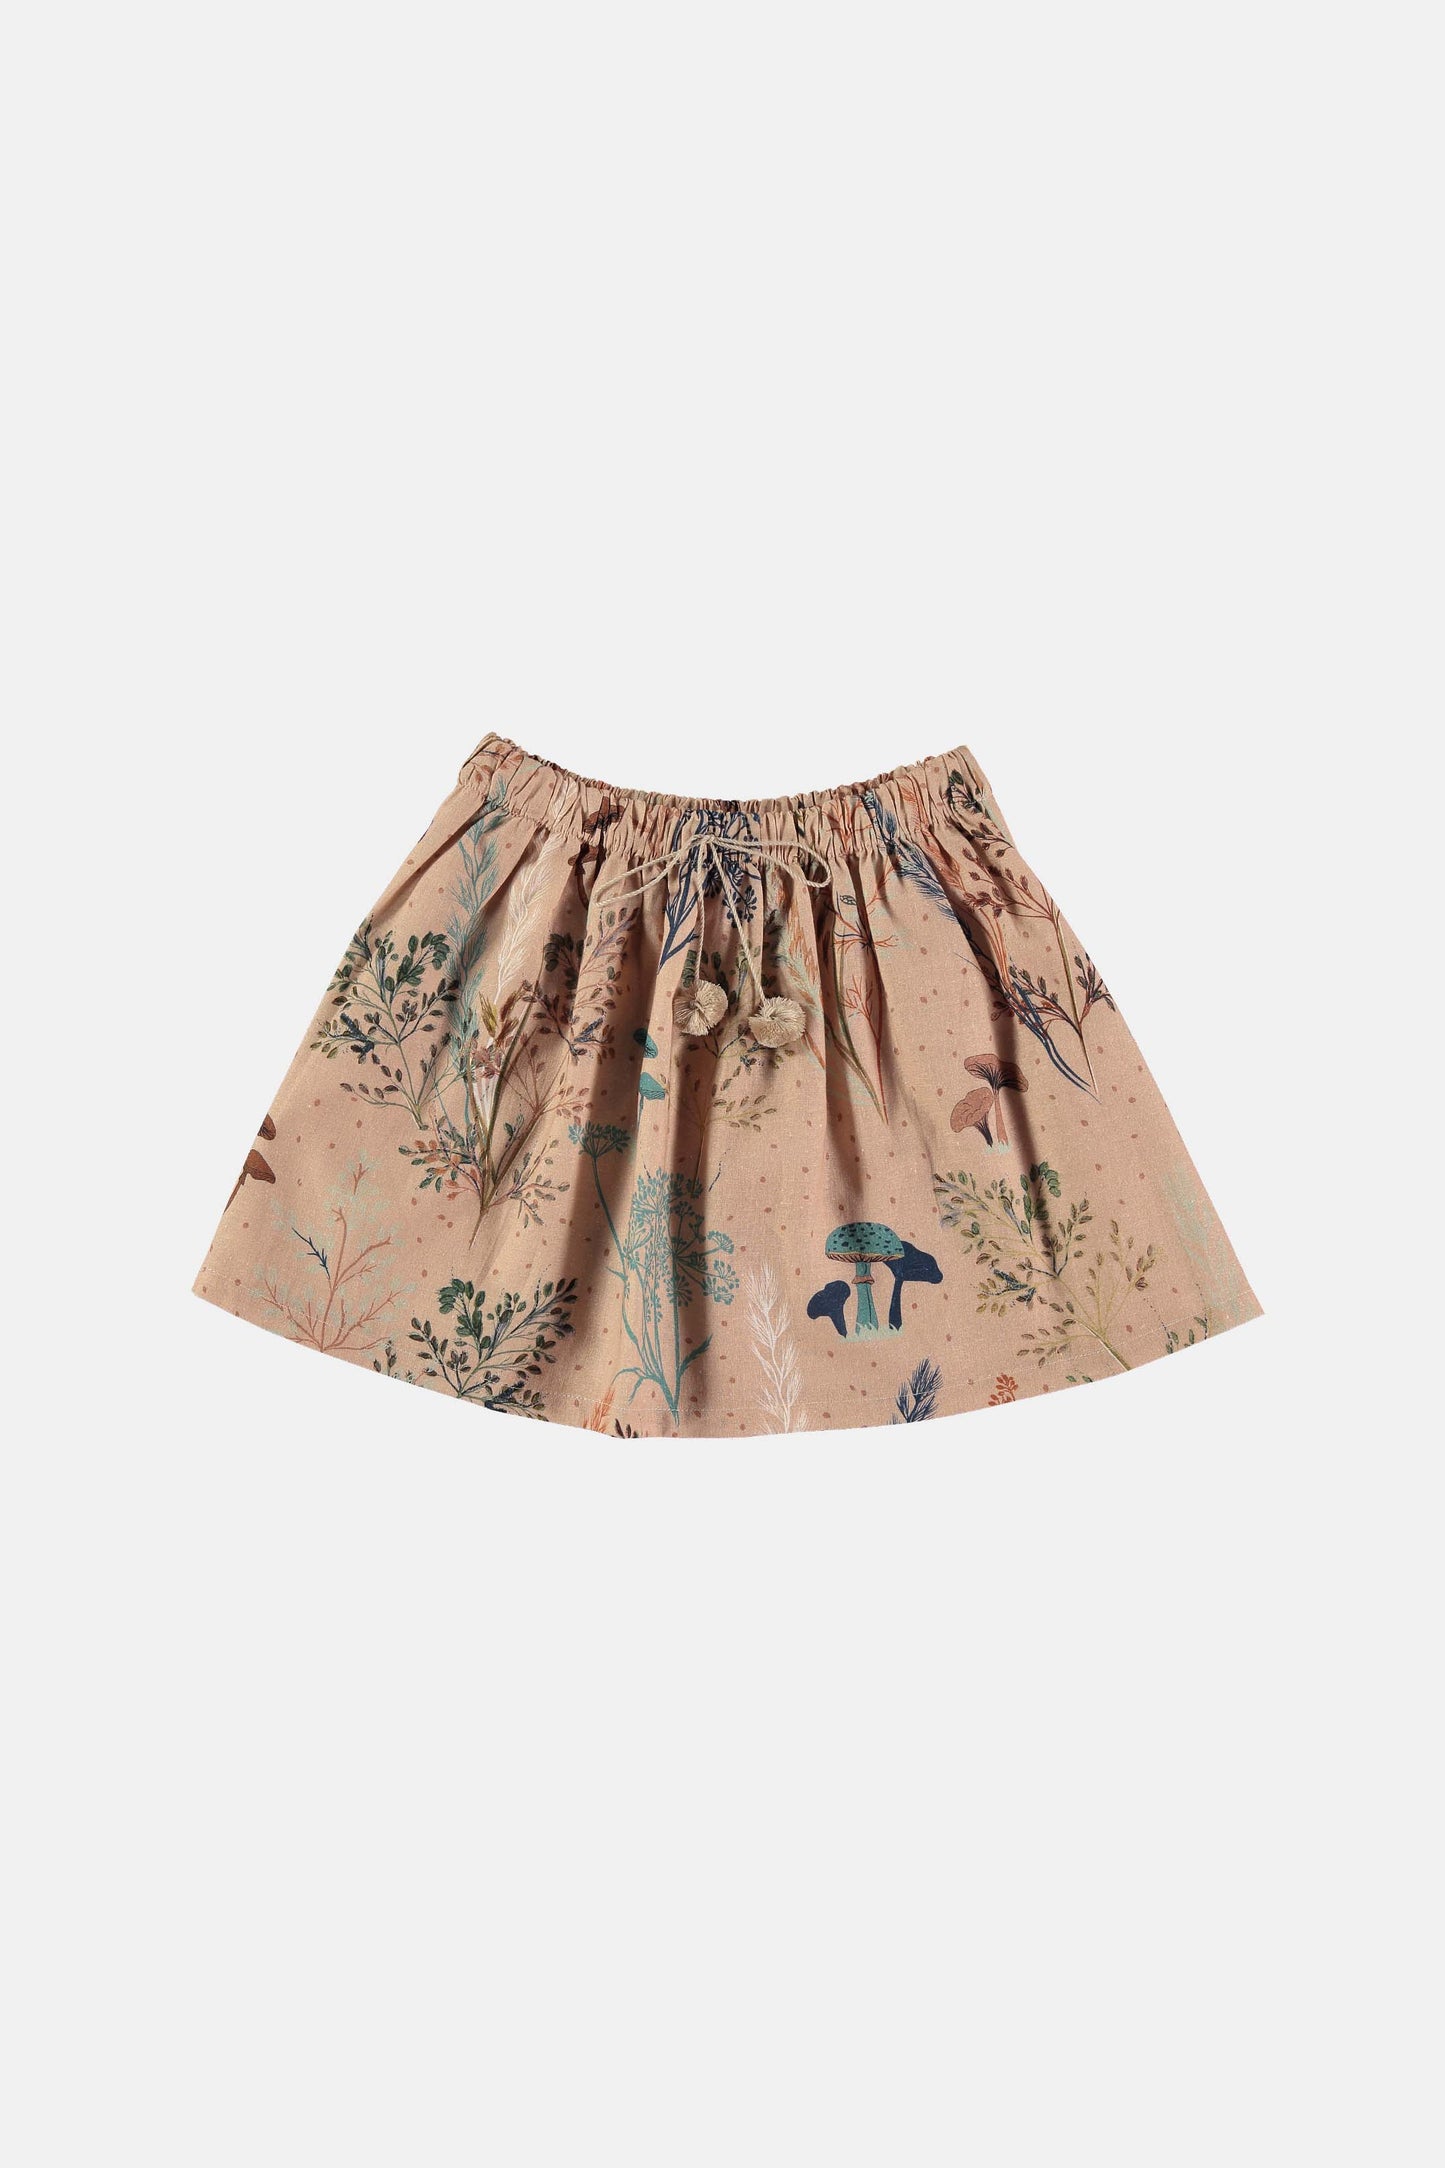 Mushroom forest skirt Skirts Coco au lait 